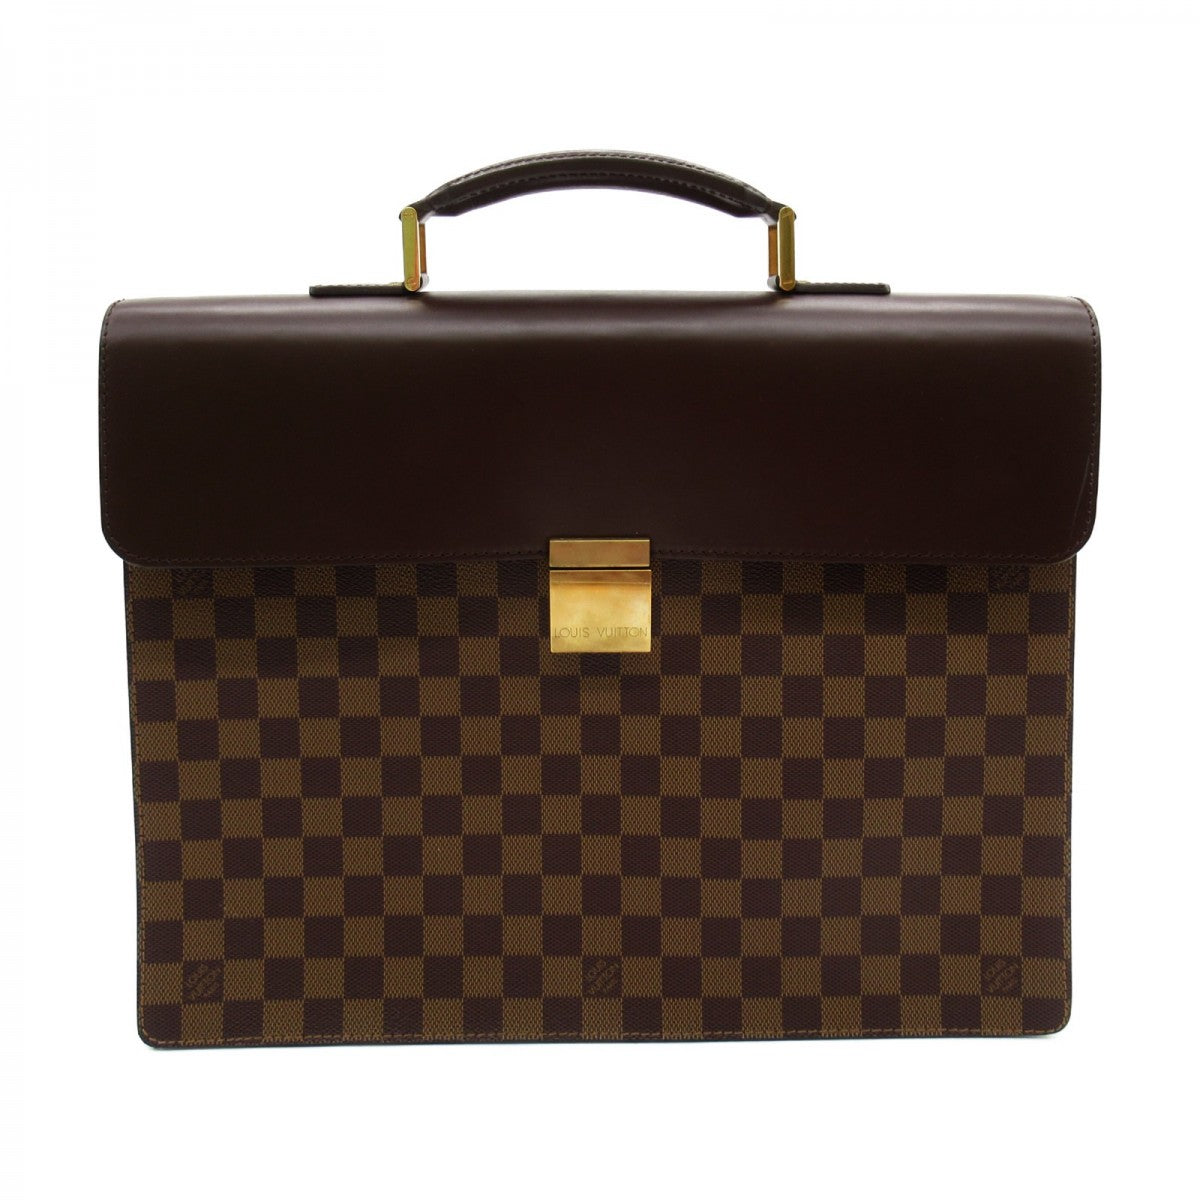 Louis Vuitton Damier Ebene Altona PM Canvas Business Bag N53315 in Excellent condition